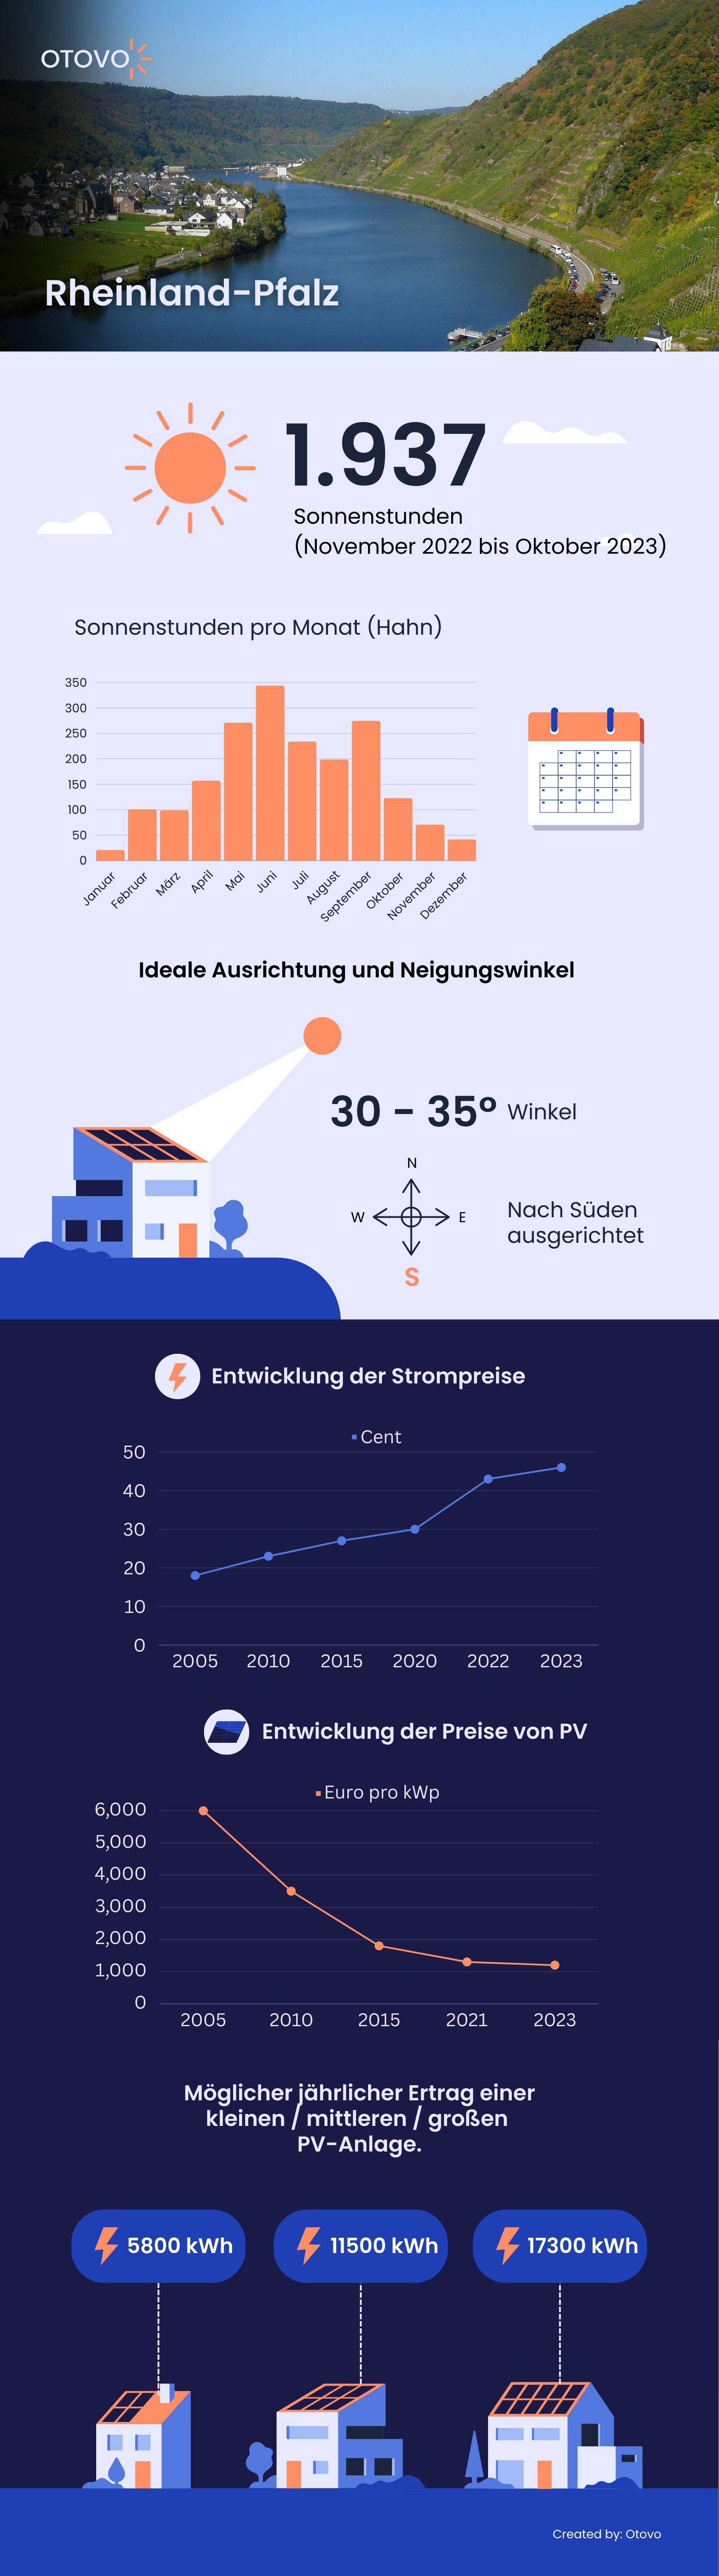 Infografik zu Solaranlagen in Rheinland-Pfalz